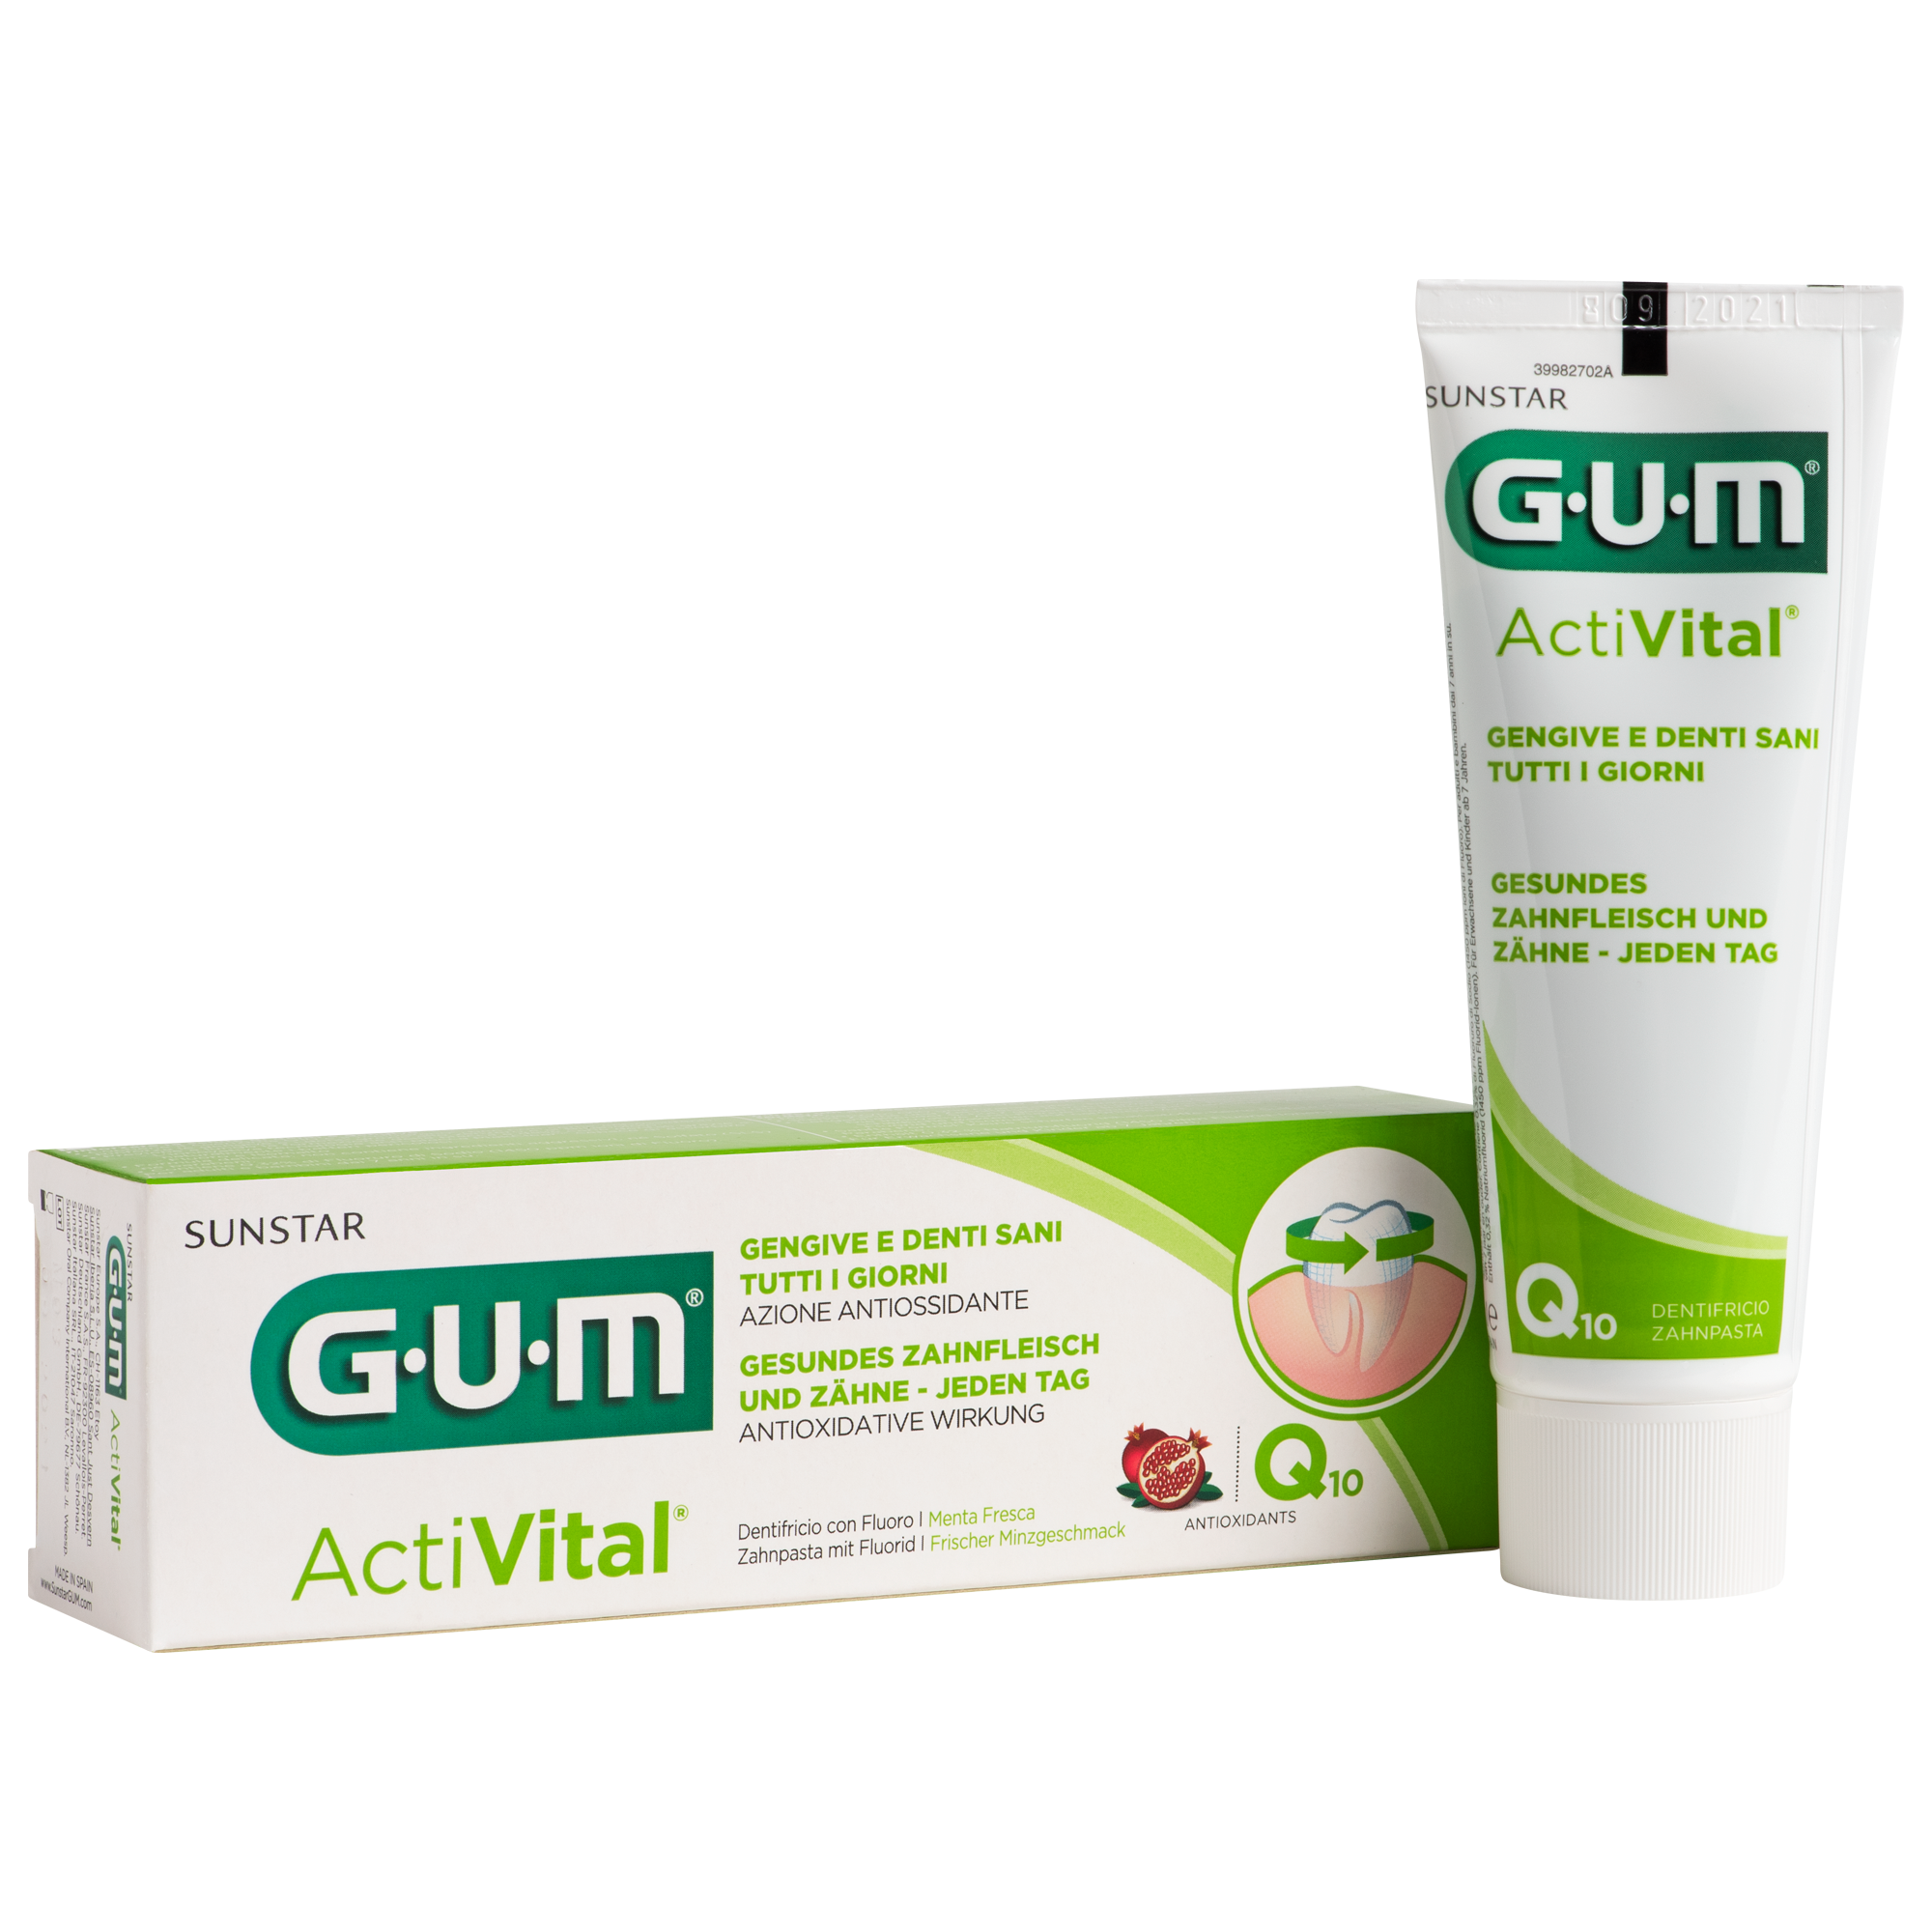 P6050-DE-IT-GUM-Activital-Toothpaste-75ml-Box-Tube